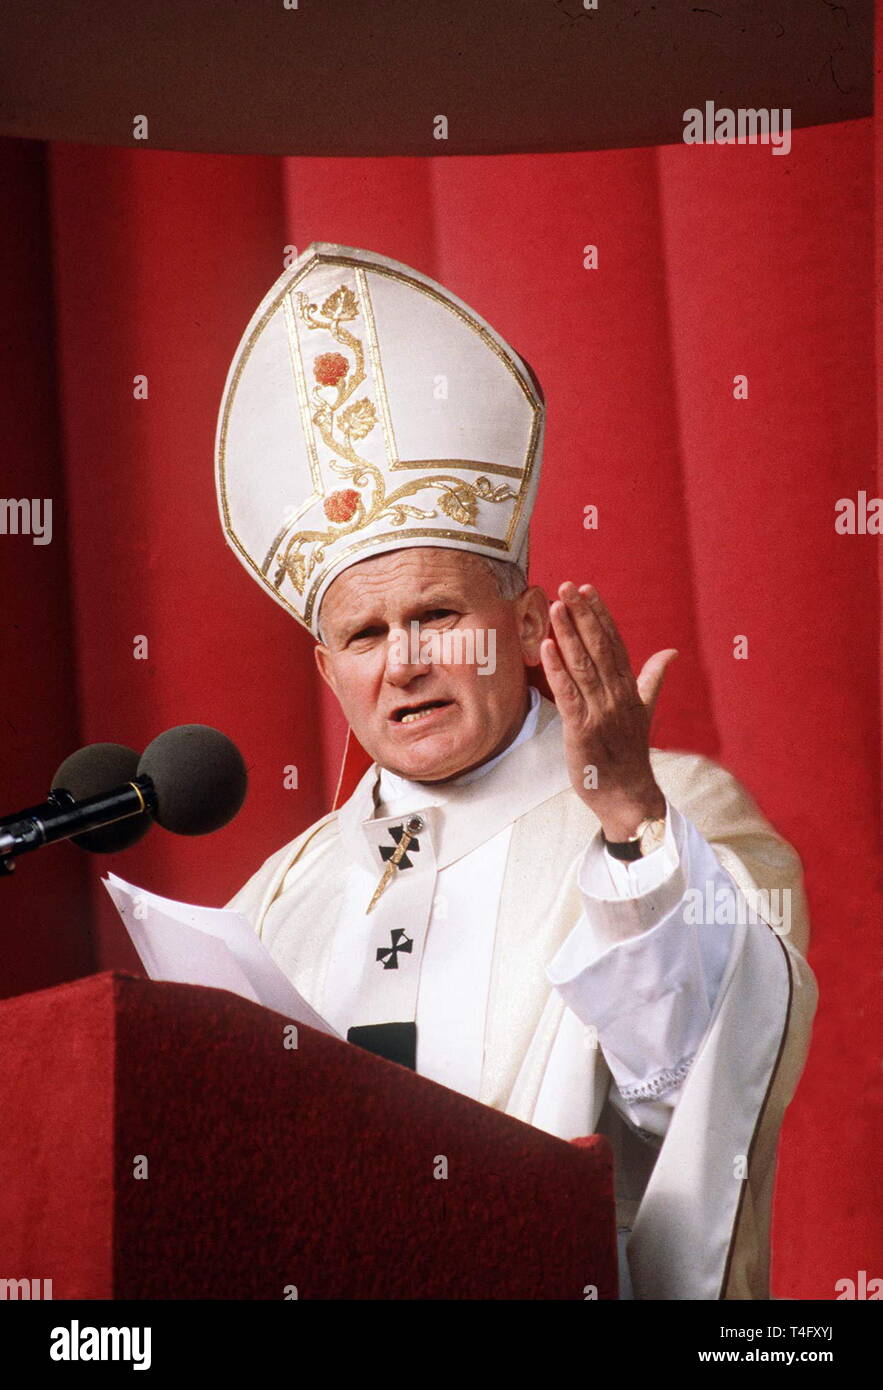 Le Pape Jean Paul II lors de sa visite historique à Paris en 1980 pèlerins adresses dans un discours à partir d'un podium tout en portant sa mitre papale et peignoirs Banque D'Images